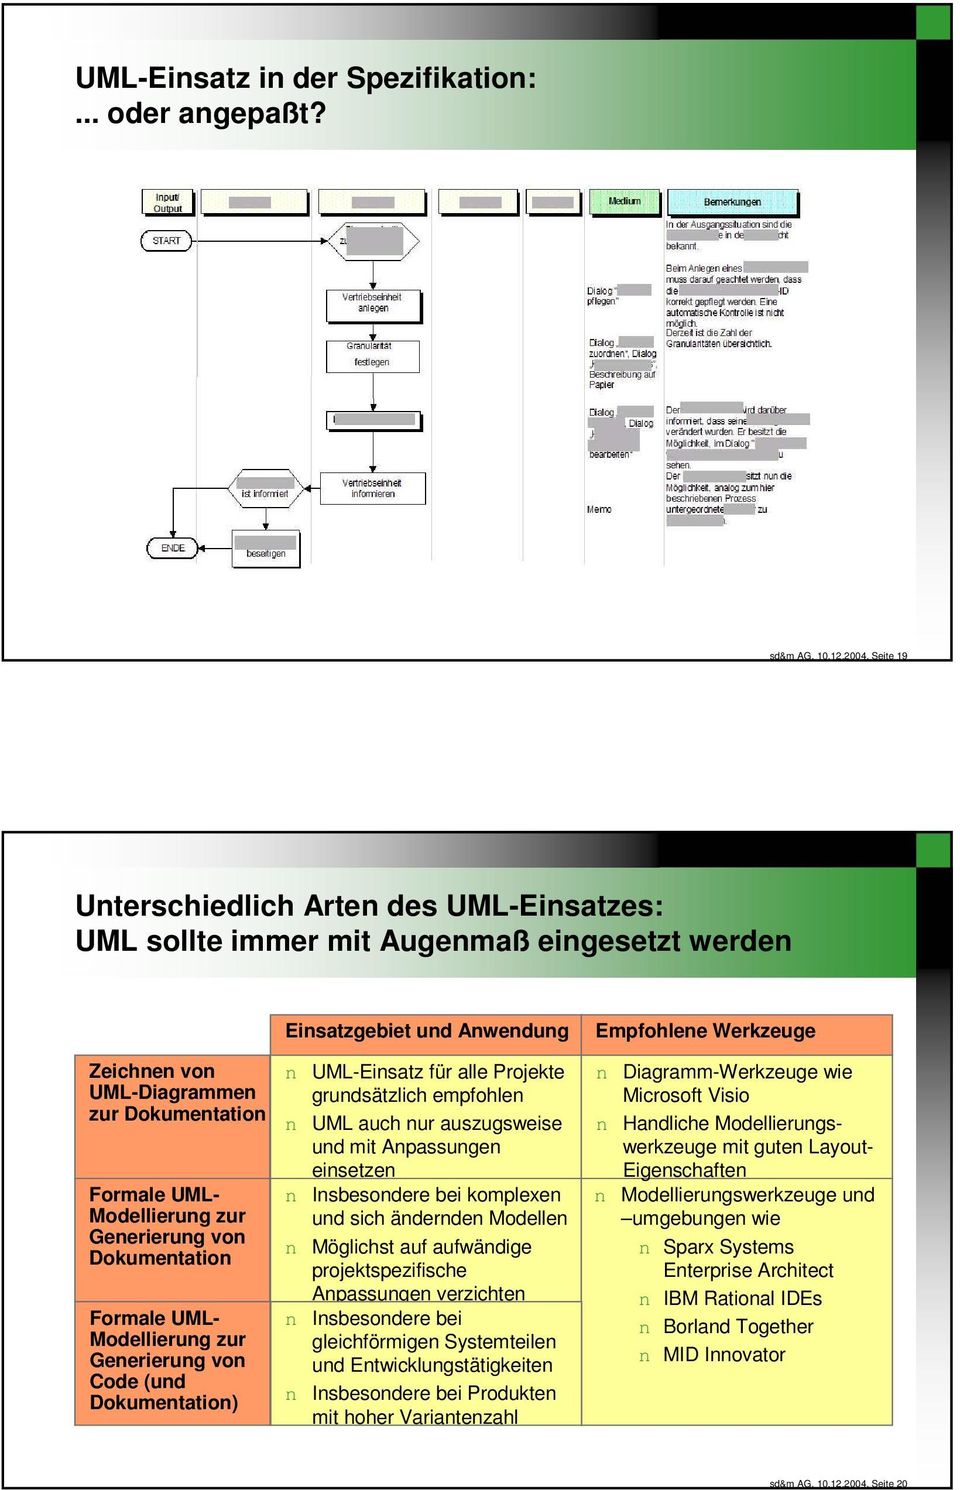 zur Geerierug vo Dokumetatio Formale UML- Modellierug zur Geerierug vo Code (ud Dokumetatio) UML-Eisatz für alle Projekte grudsätzlich empfohle UML auch ur auszugsweise ud mit Apassuge eisetze